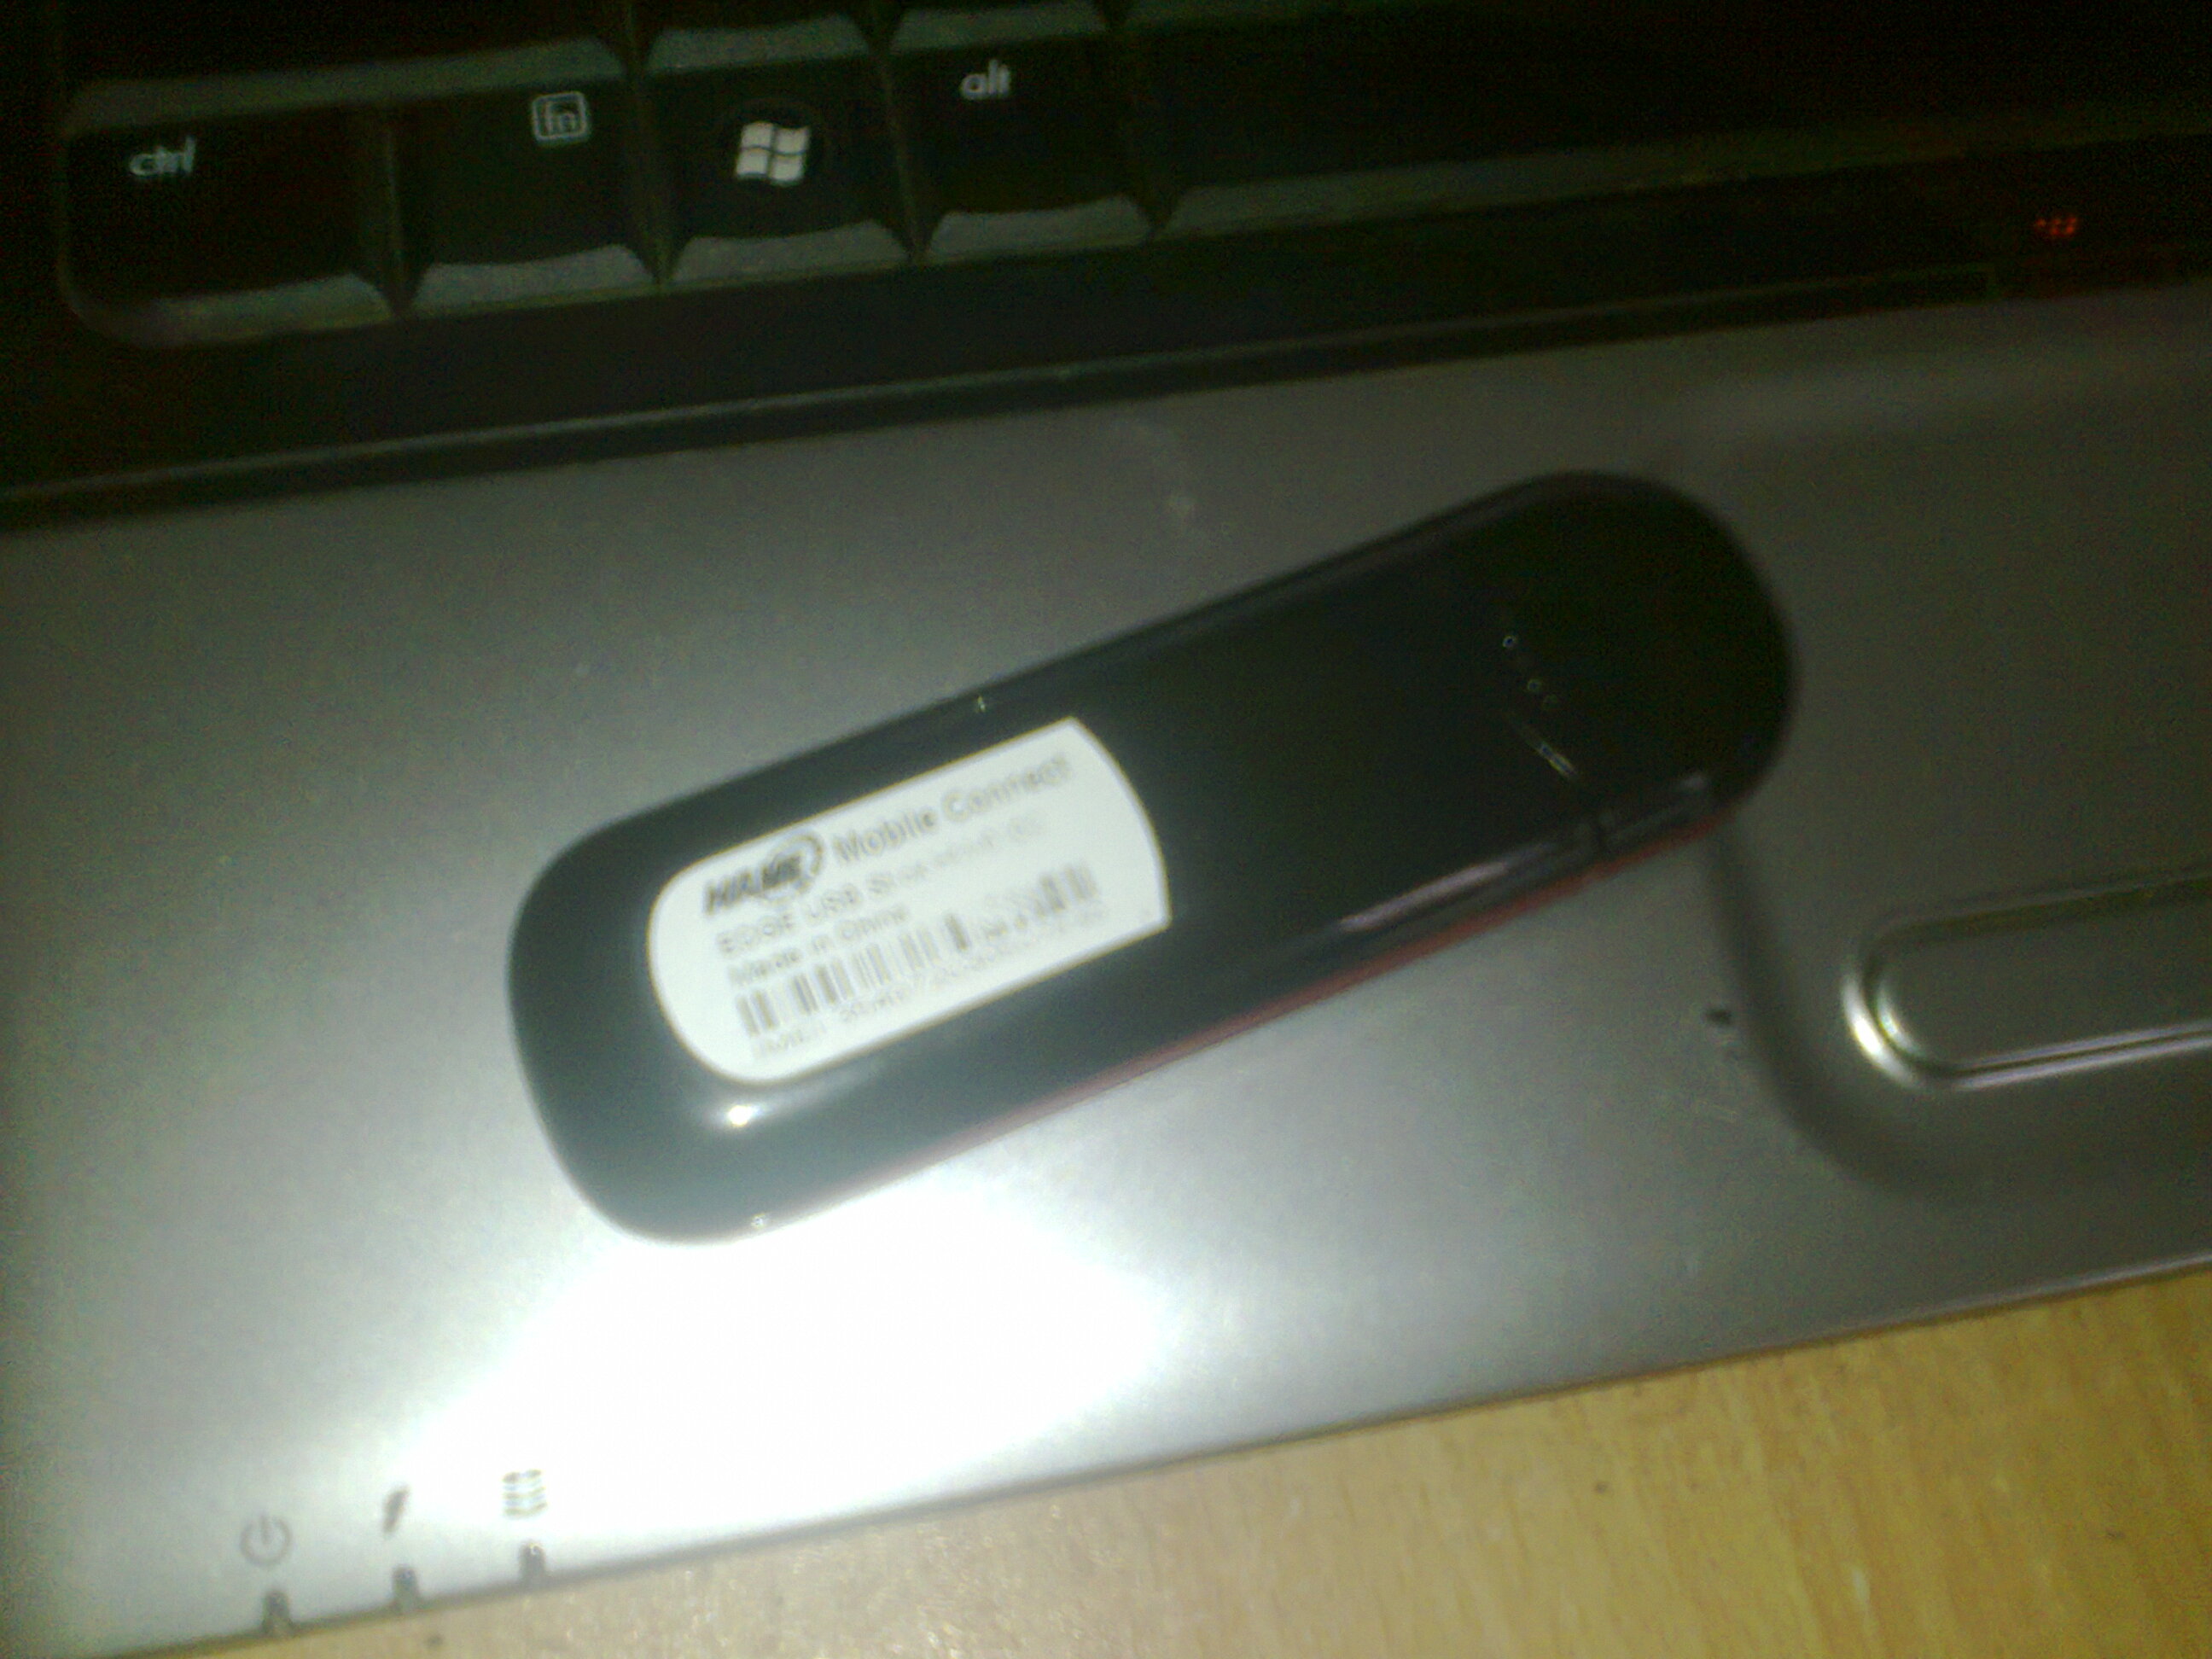 HAME USB Modem large image 0